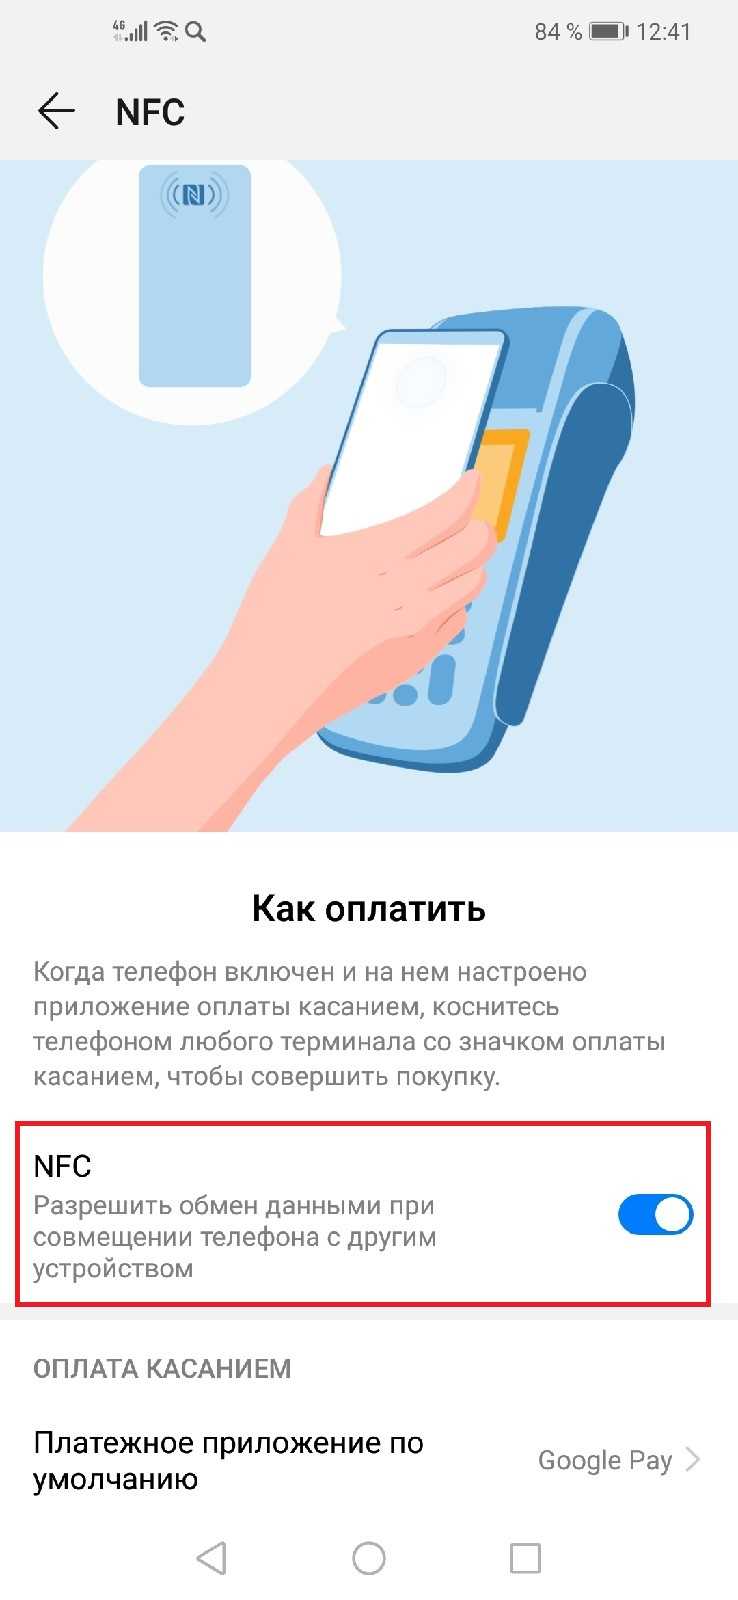 Nfc в смартфоне: что это и как пользоваться